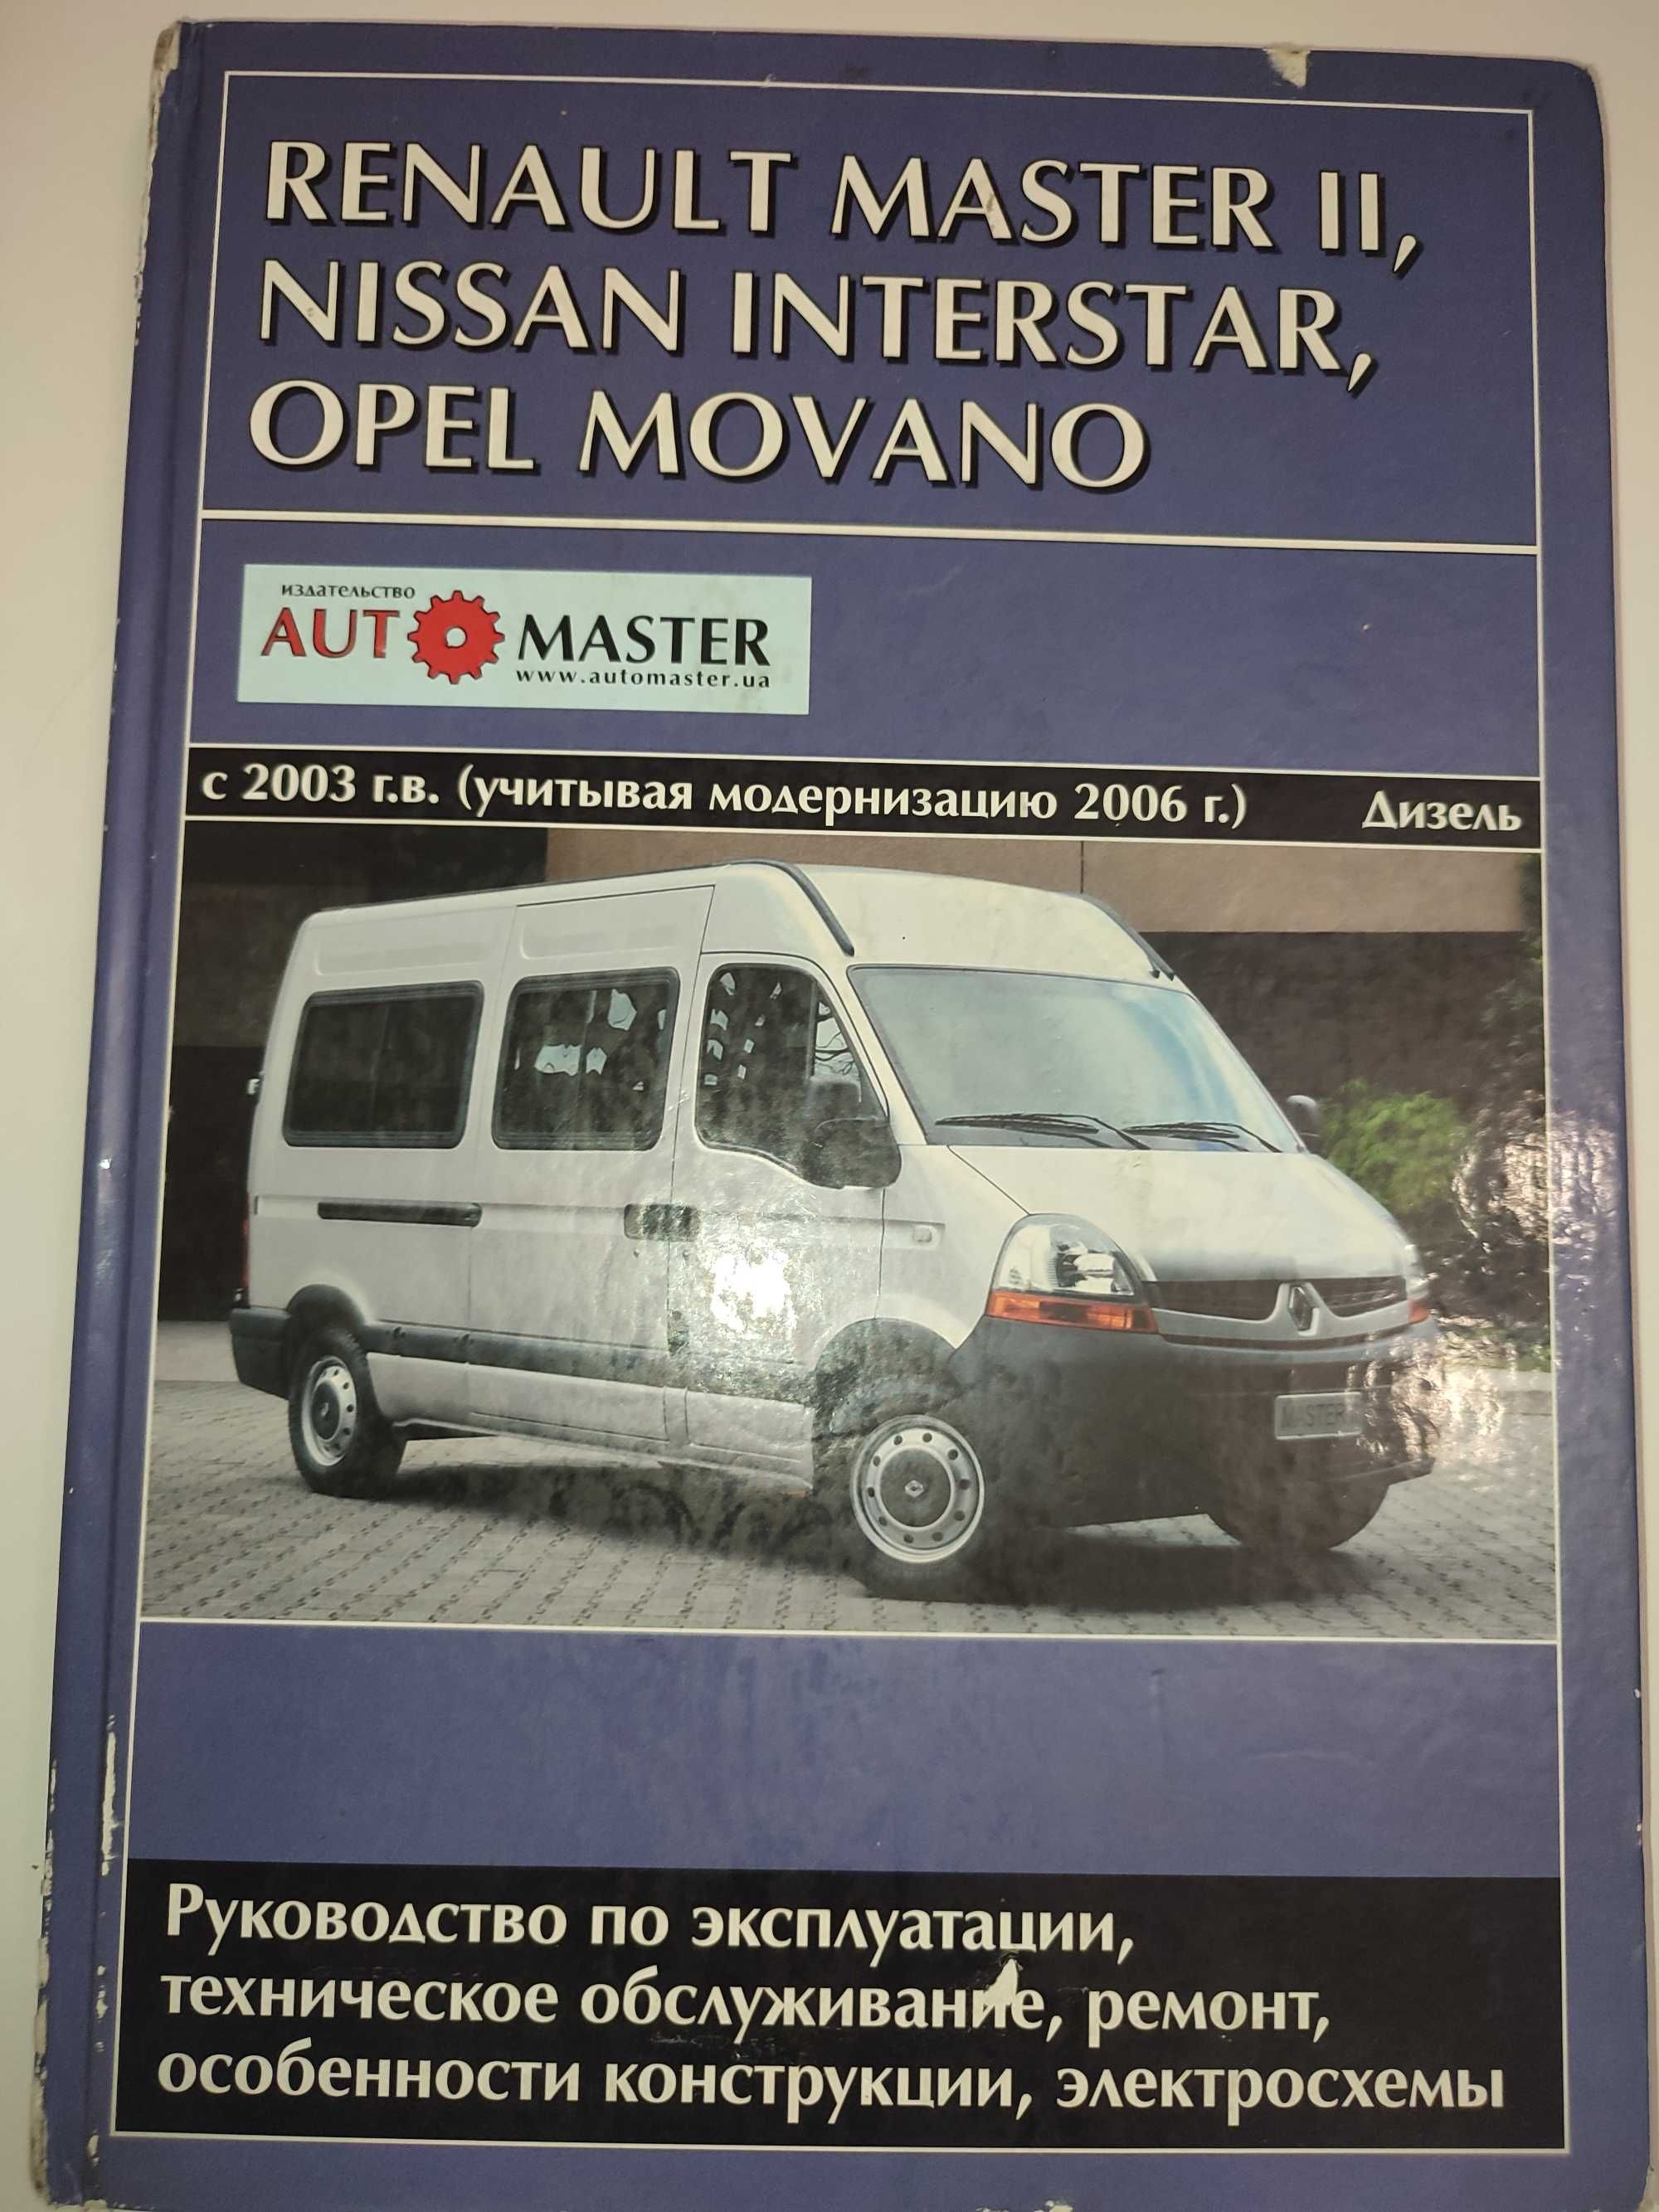 Renault Master Nissan Interstar Руководство по ремонту и обслуживанию